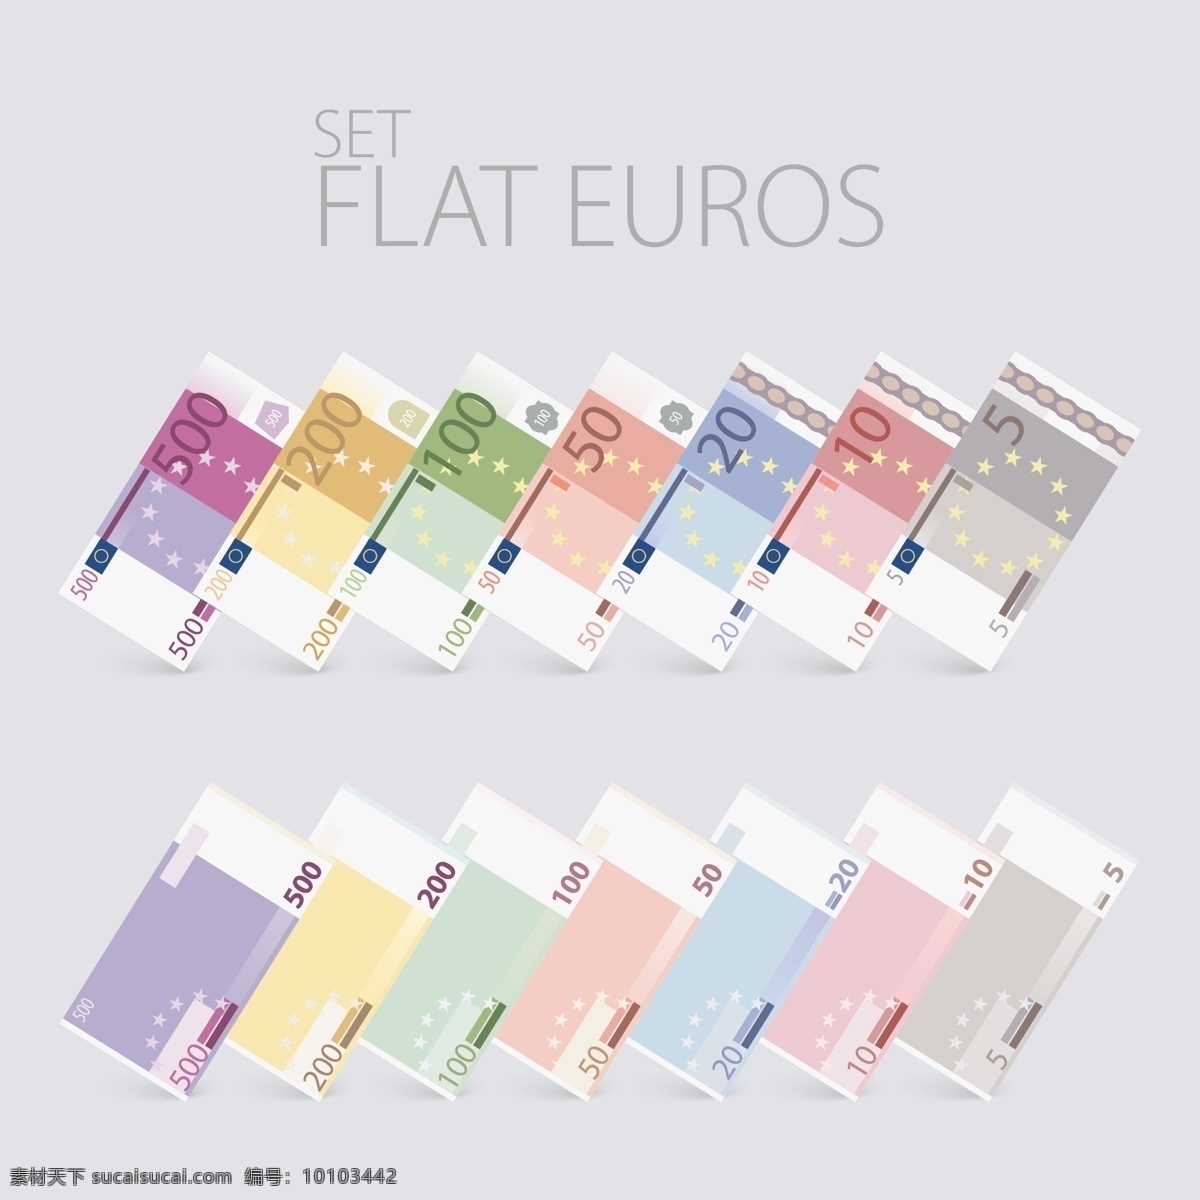 欧元纸币设计 商业 纸张 货币 图标 平面 纸币 符号 金融 硬币 欧洲 经济 现金 付款 欧元